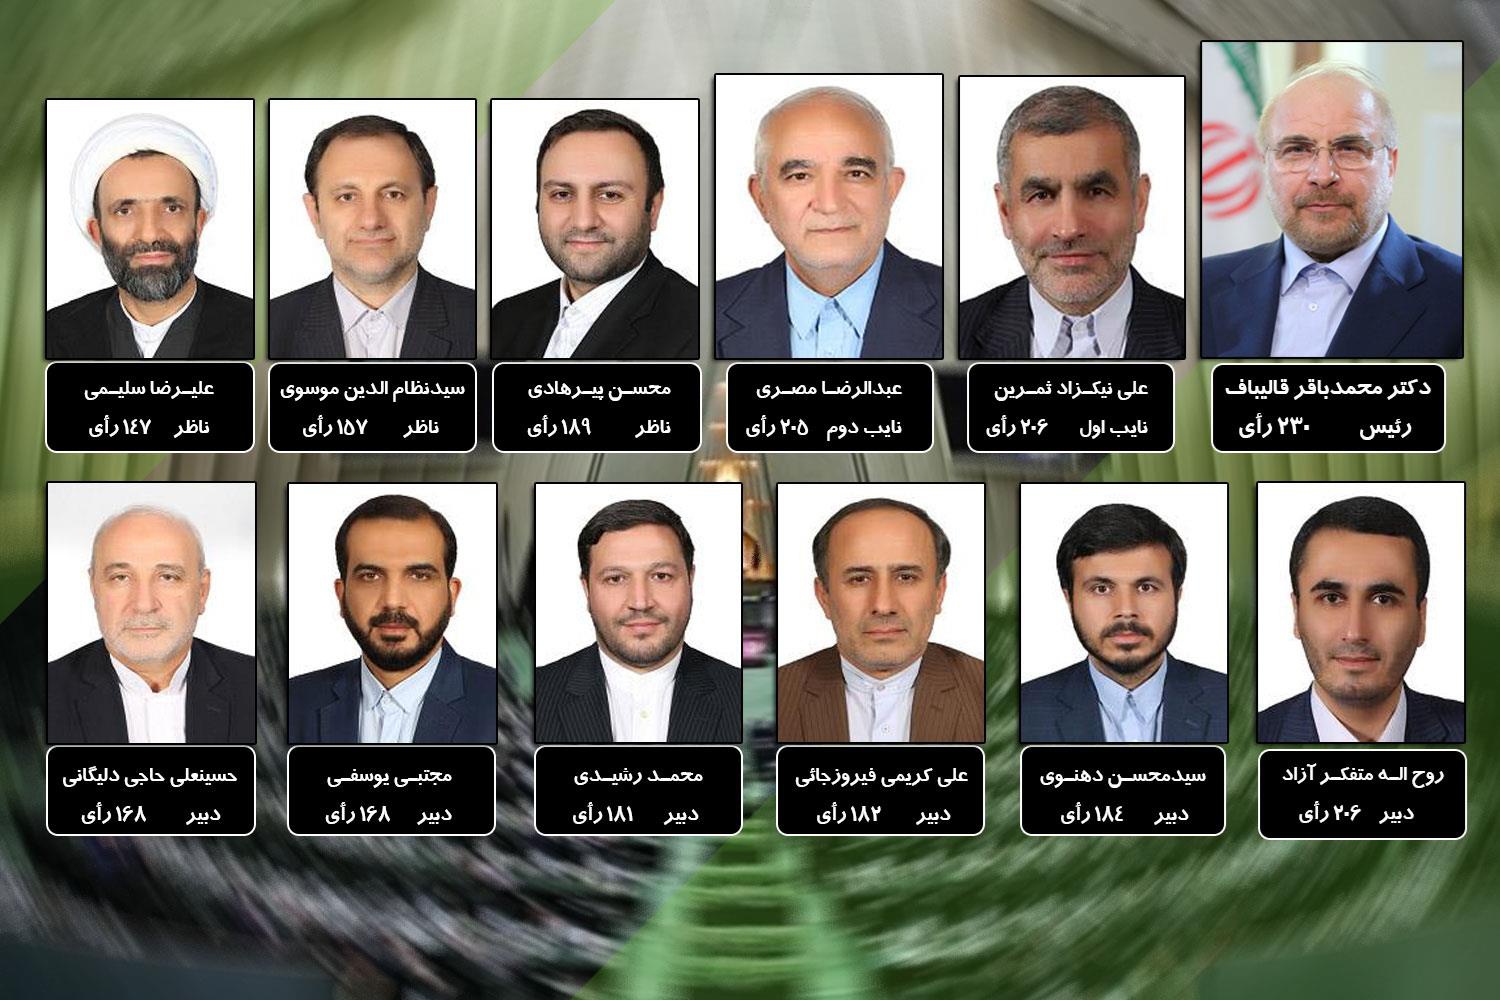 هیات رییسه مجلس انتخاب شدند/ دو  نماینده کرمانشاه در ترکیب هیات رئیسه مجلس